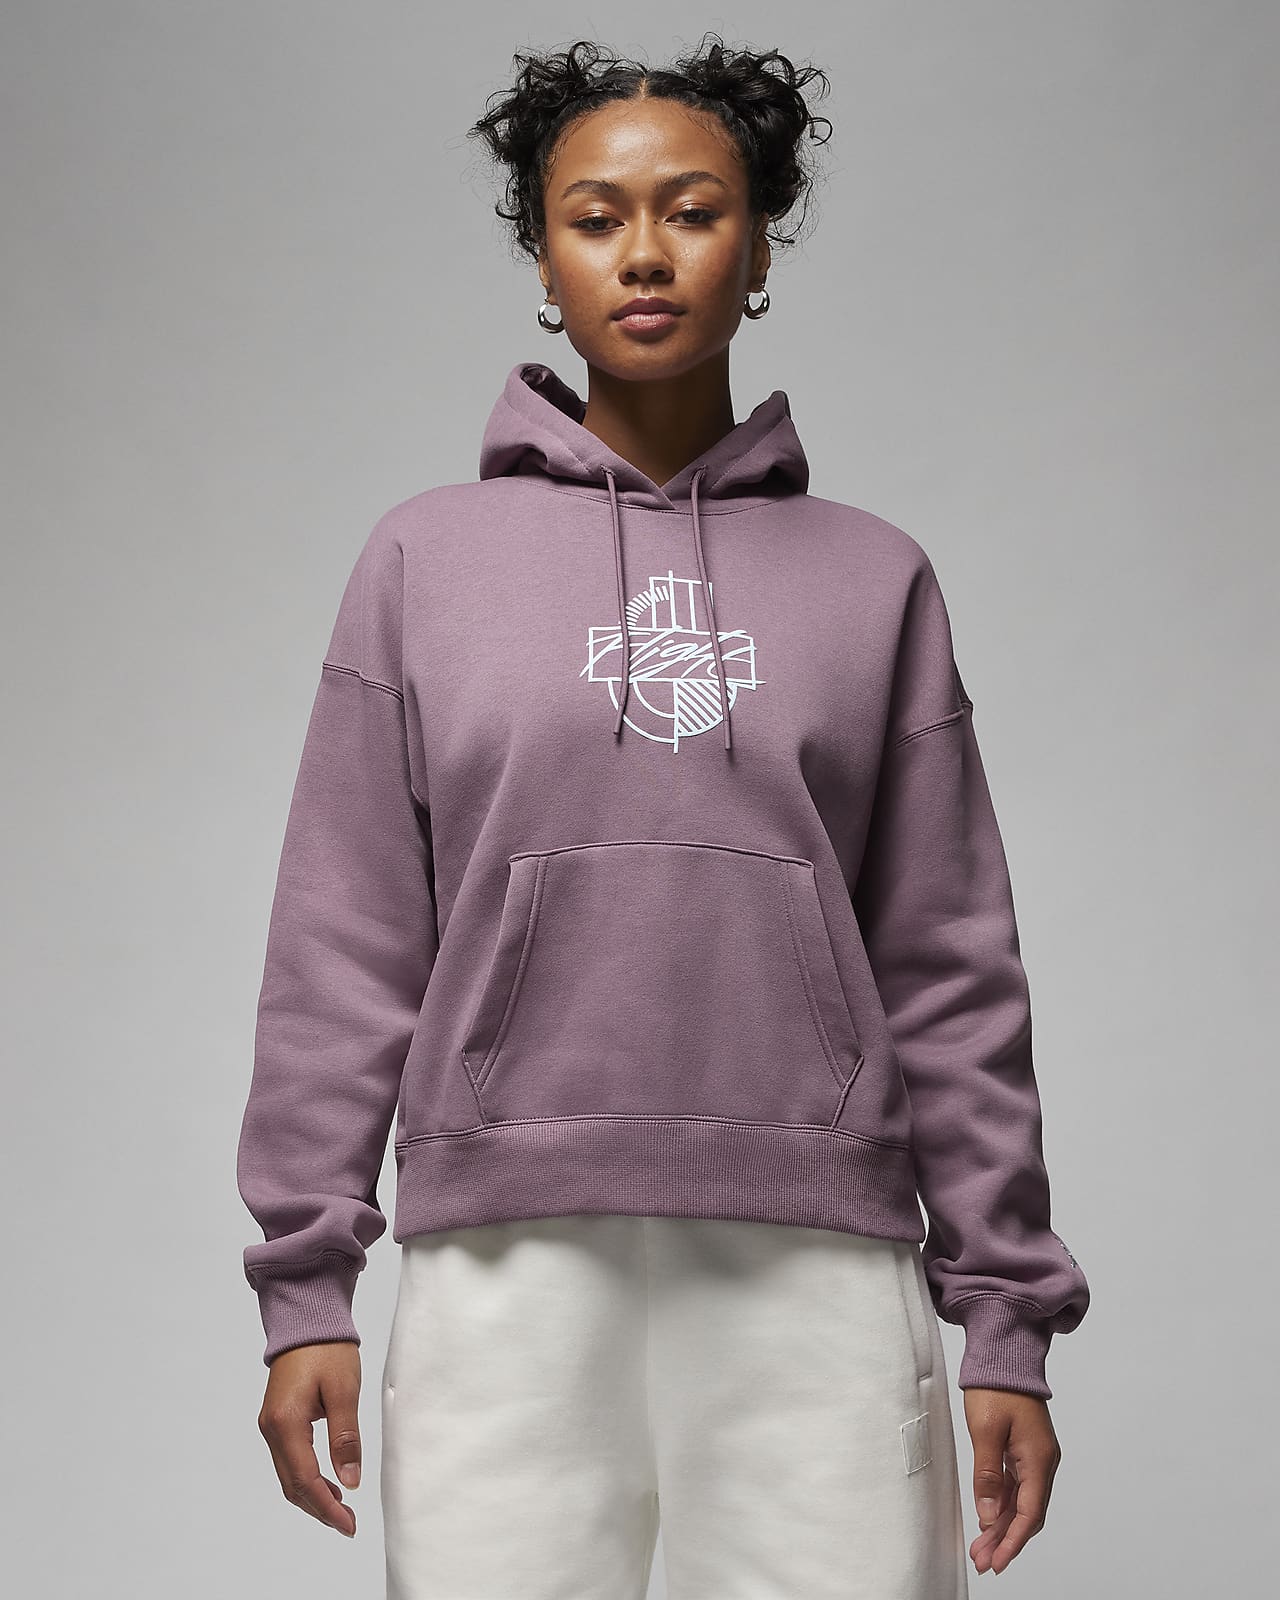 Sweatshirt Fleece in Heather Grey – Brooklyn Craft Company